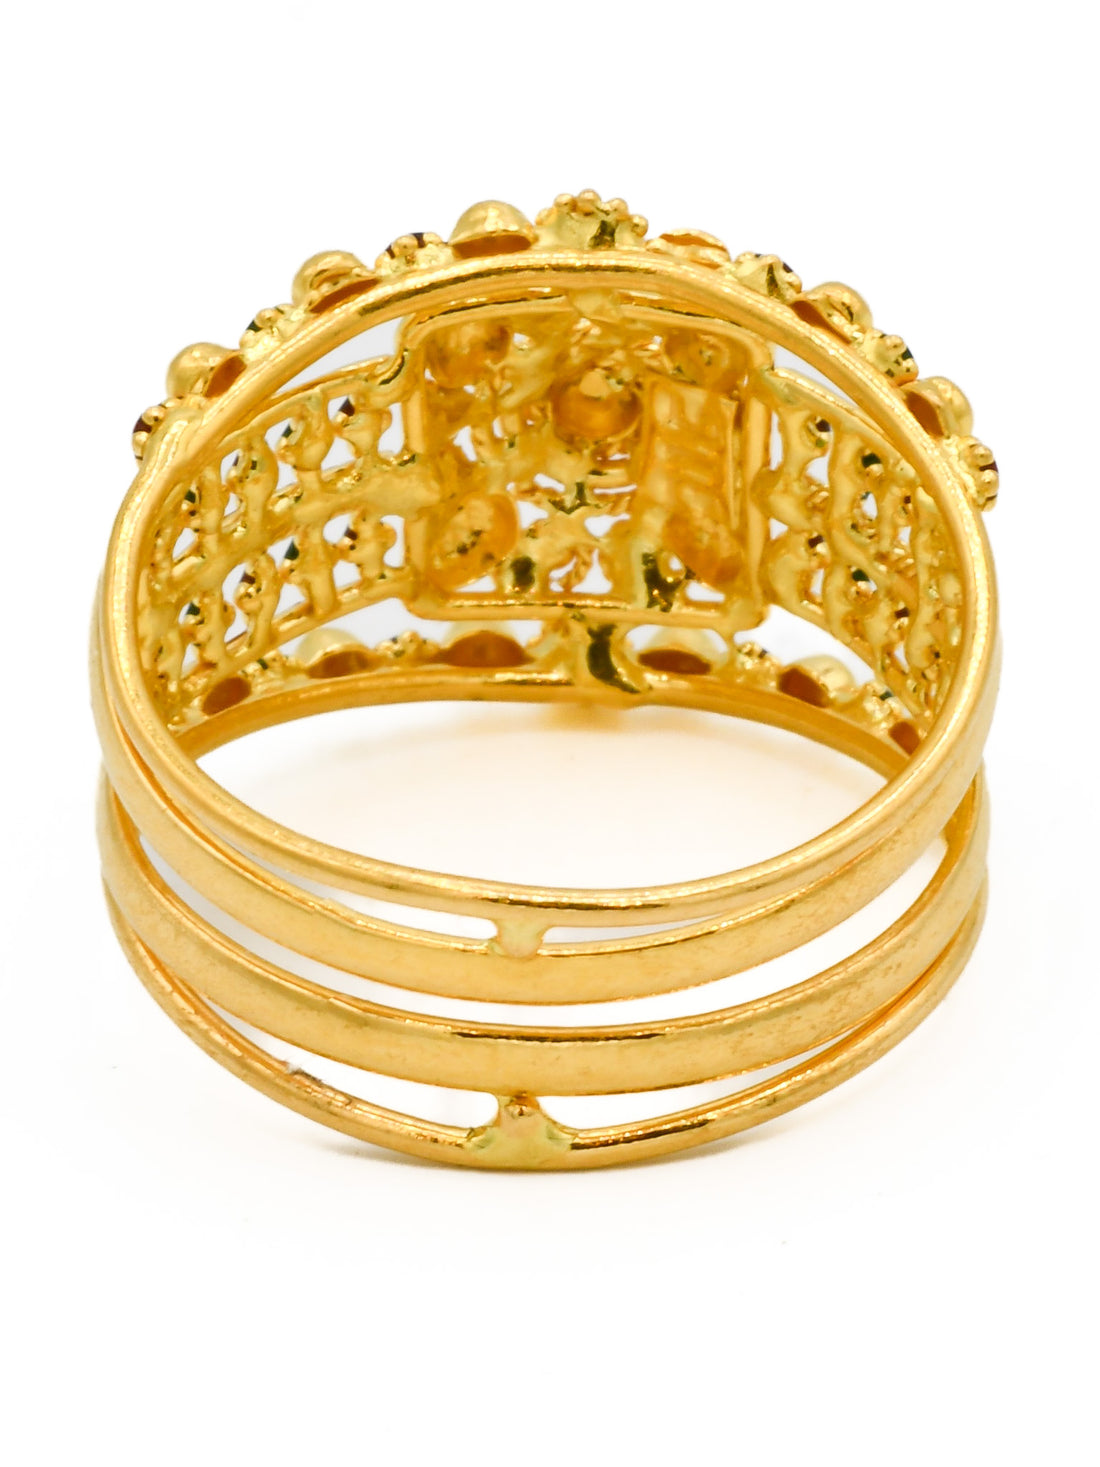 22ct Gold Mina Ladies Ring - Roop Darshan